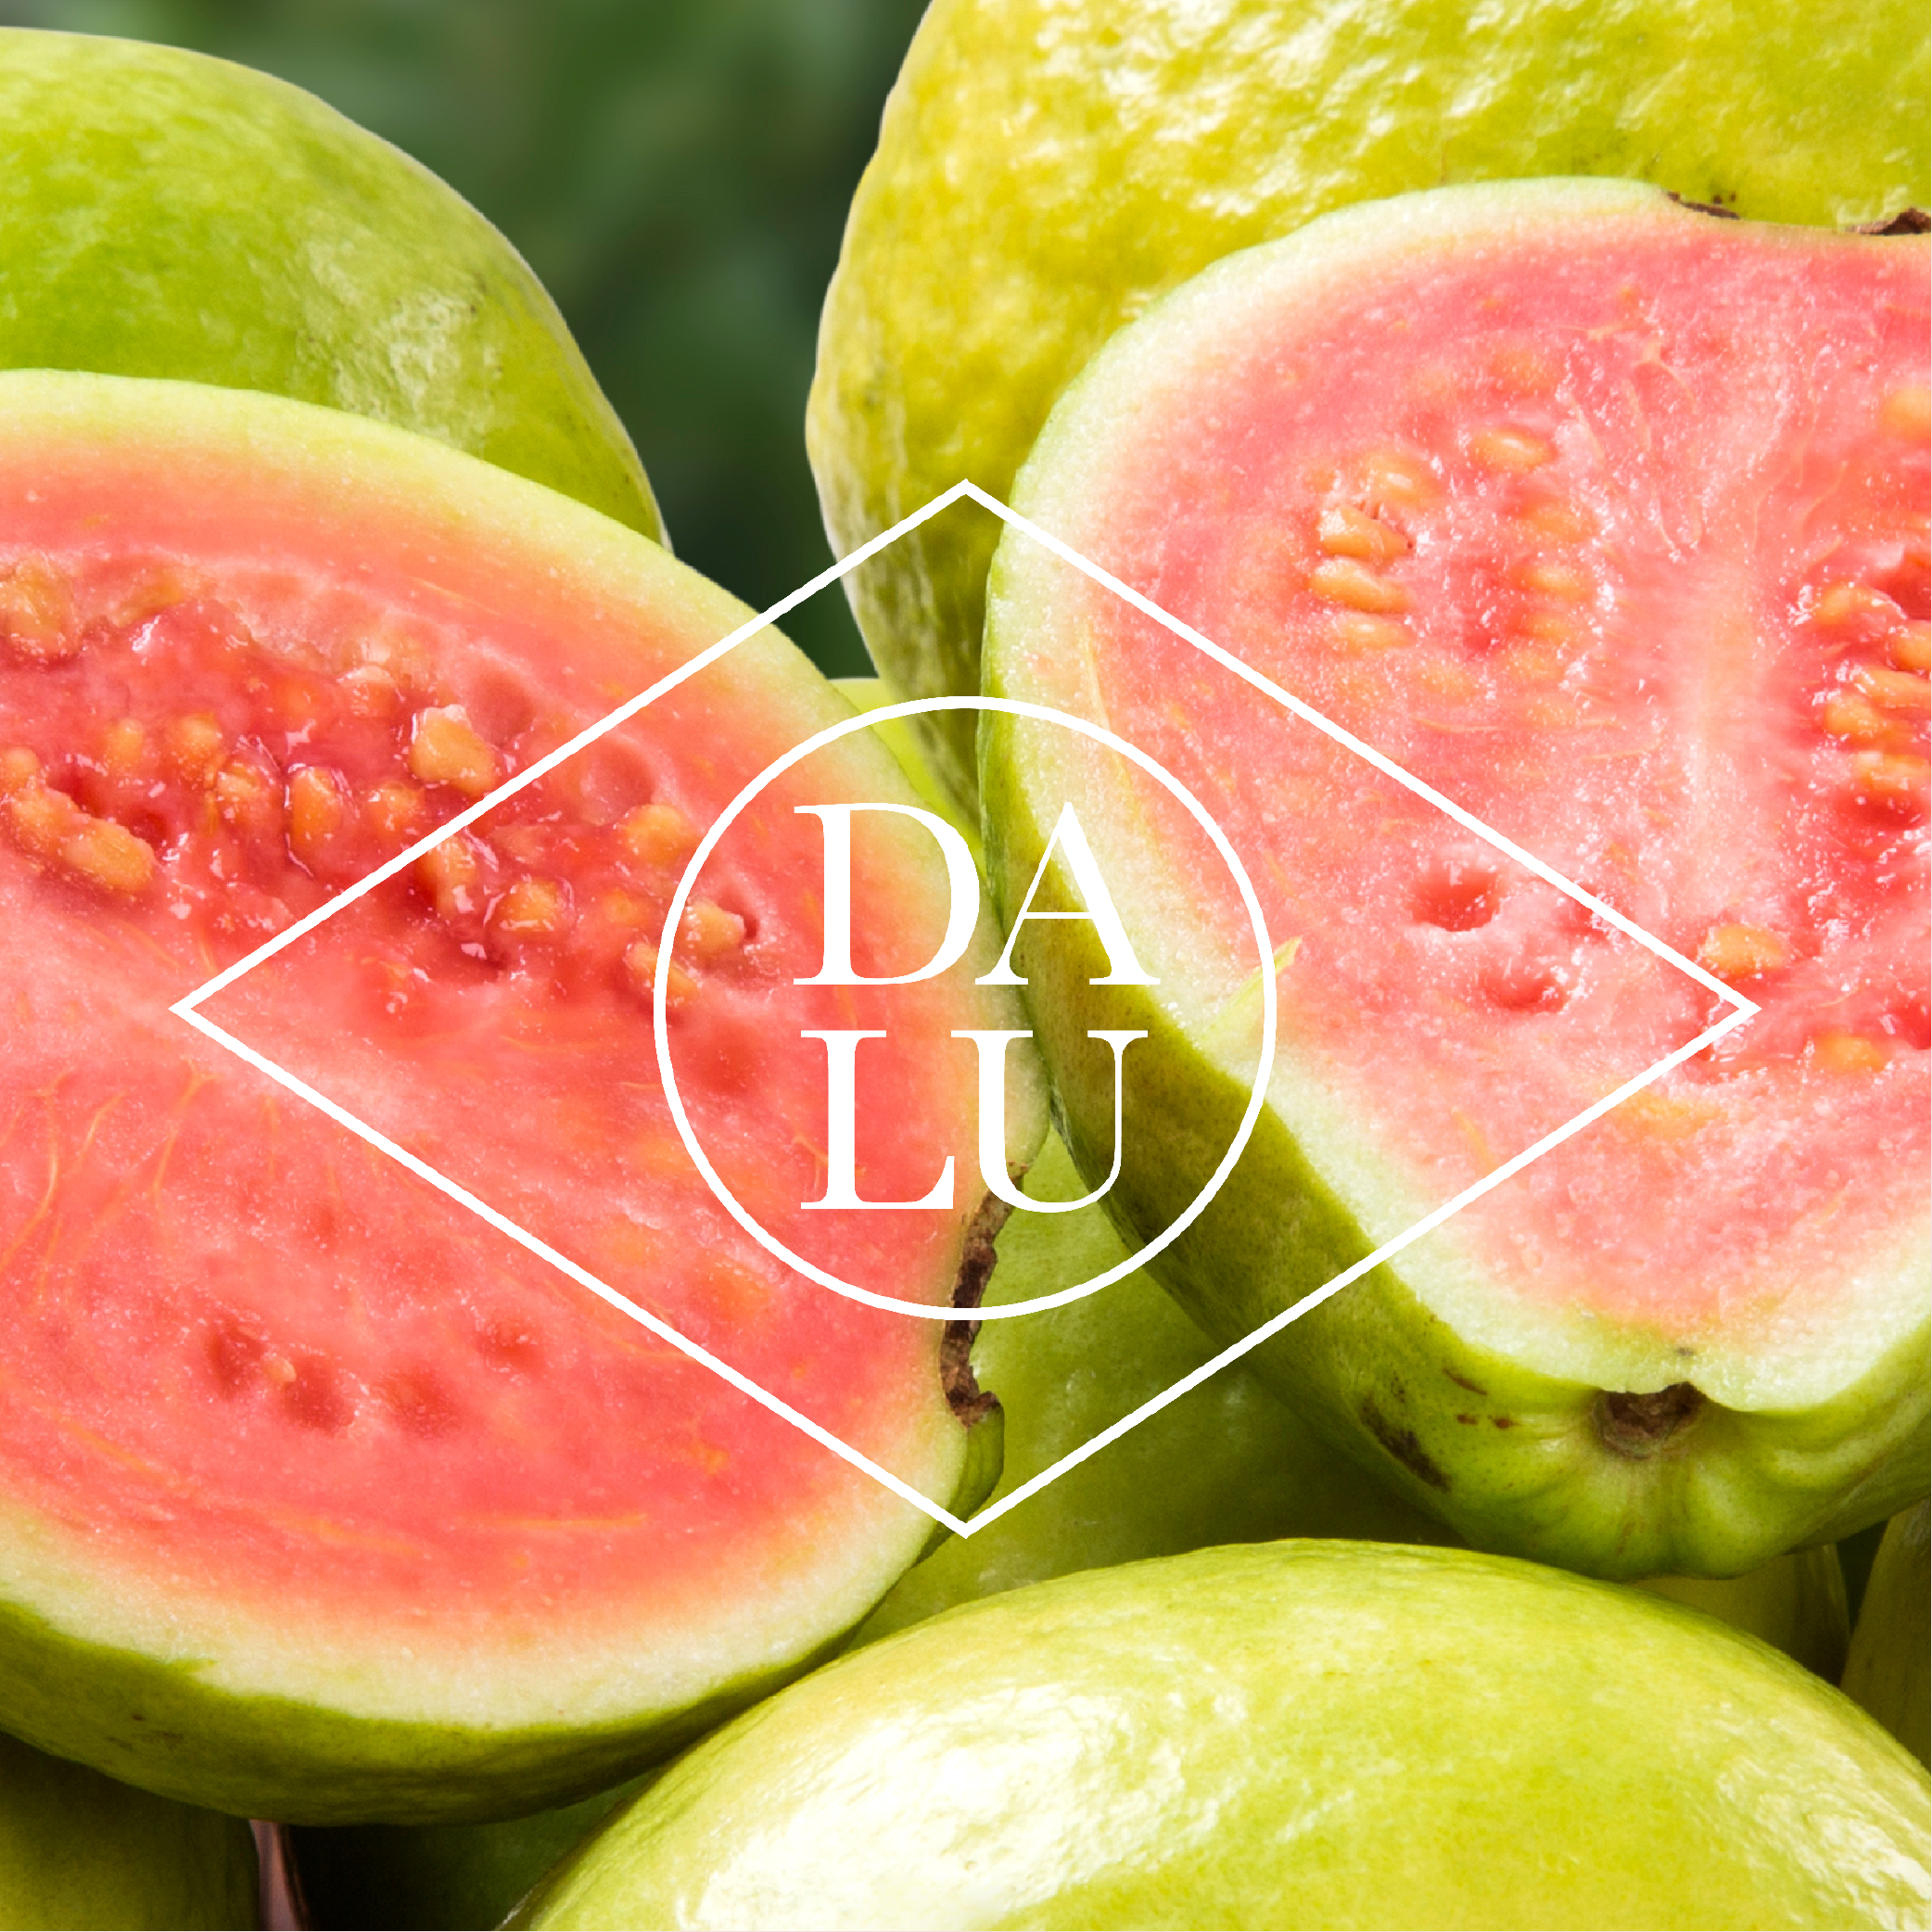 Das edle DALU Logo mit Goiaba-Früchten im Hintergrund.